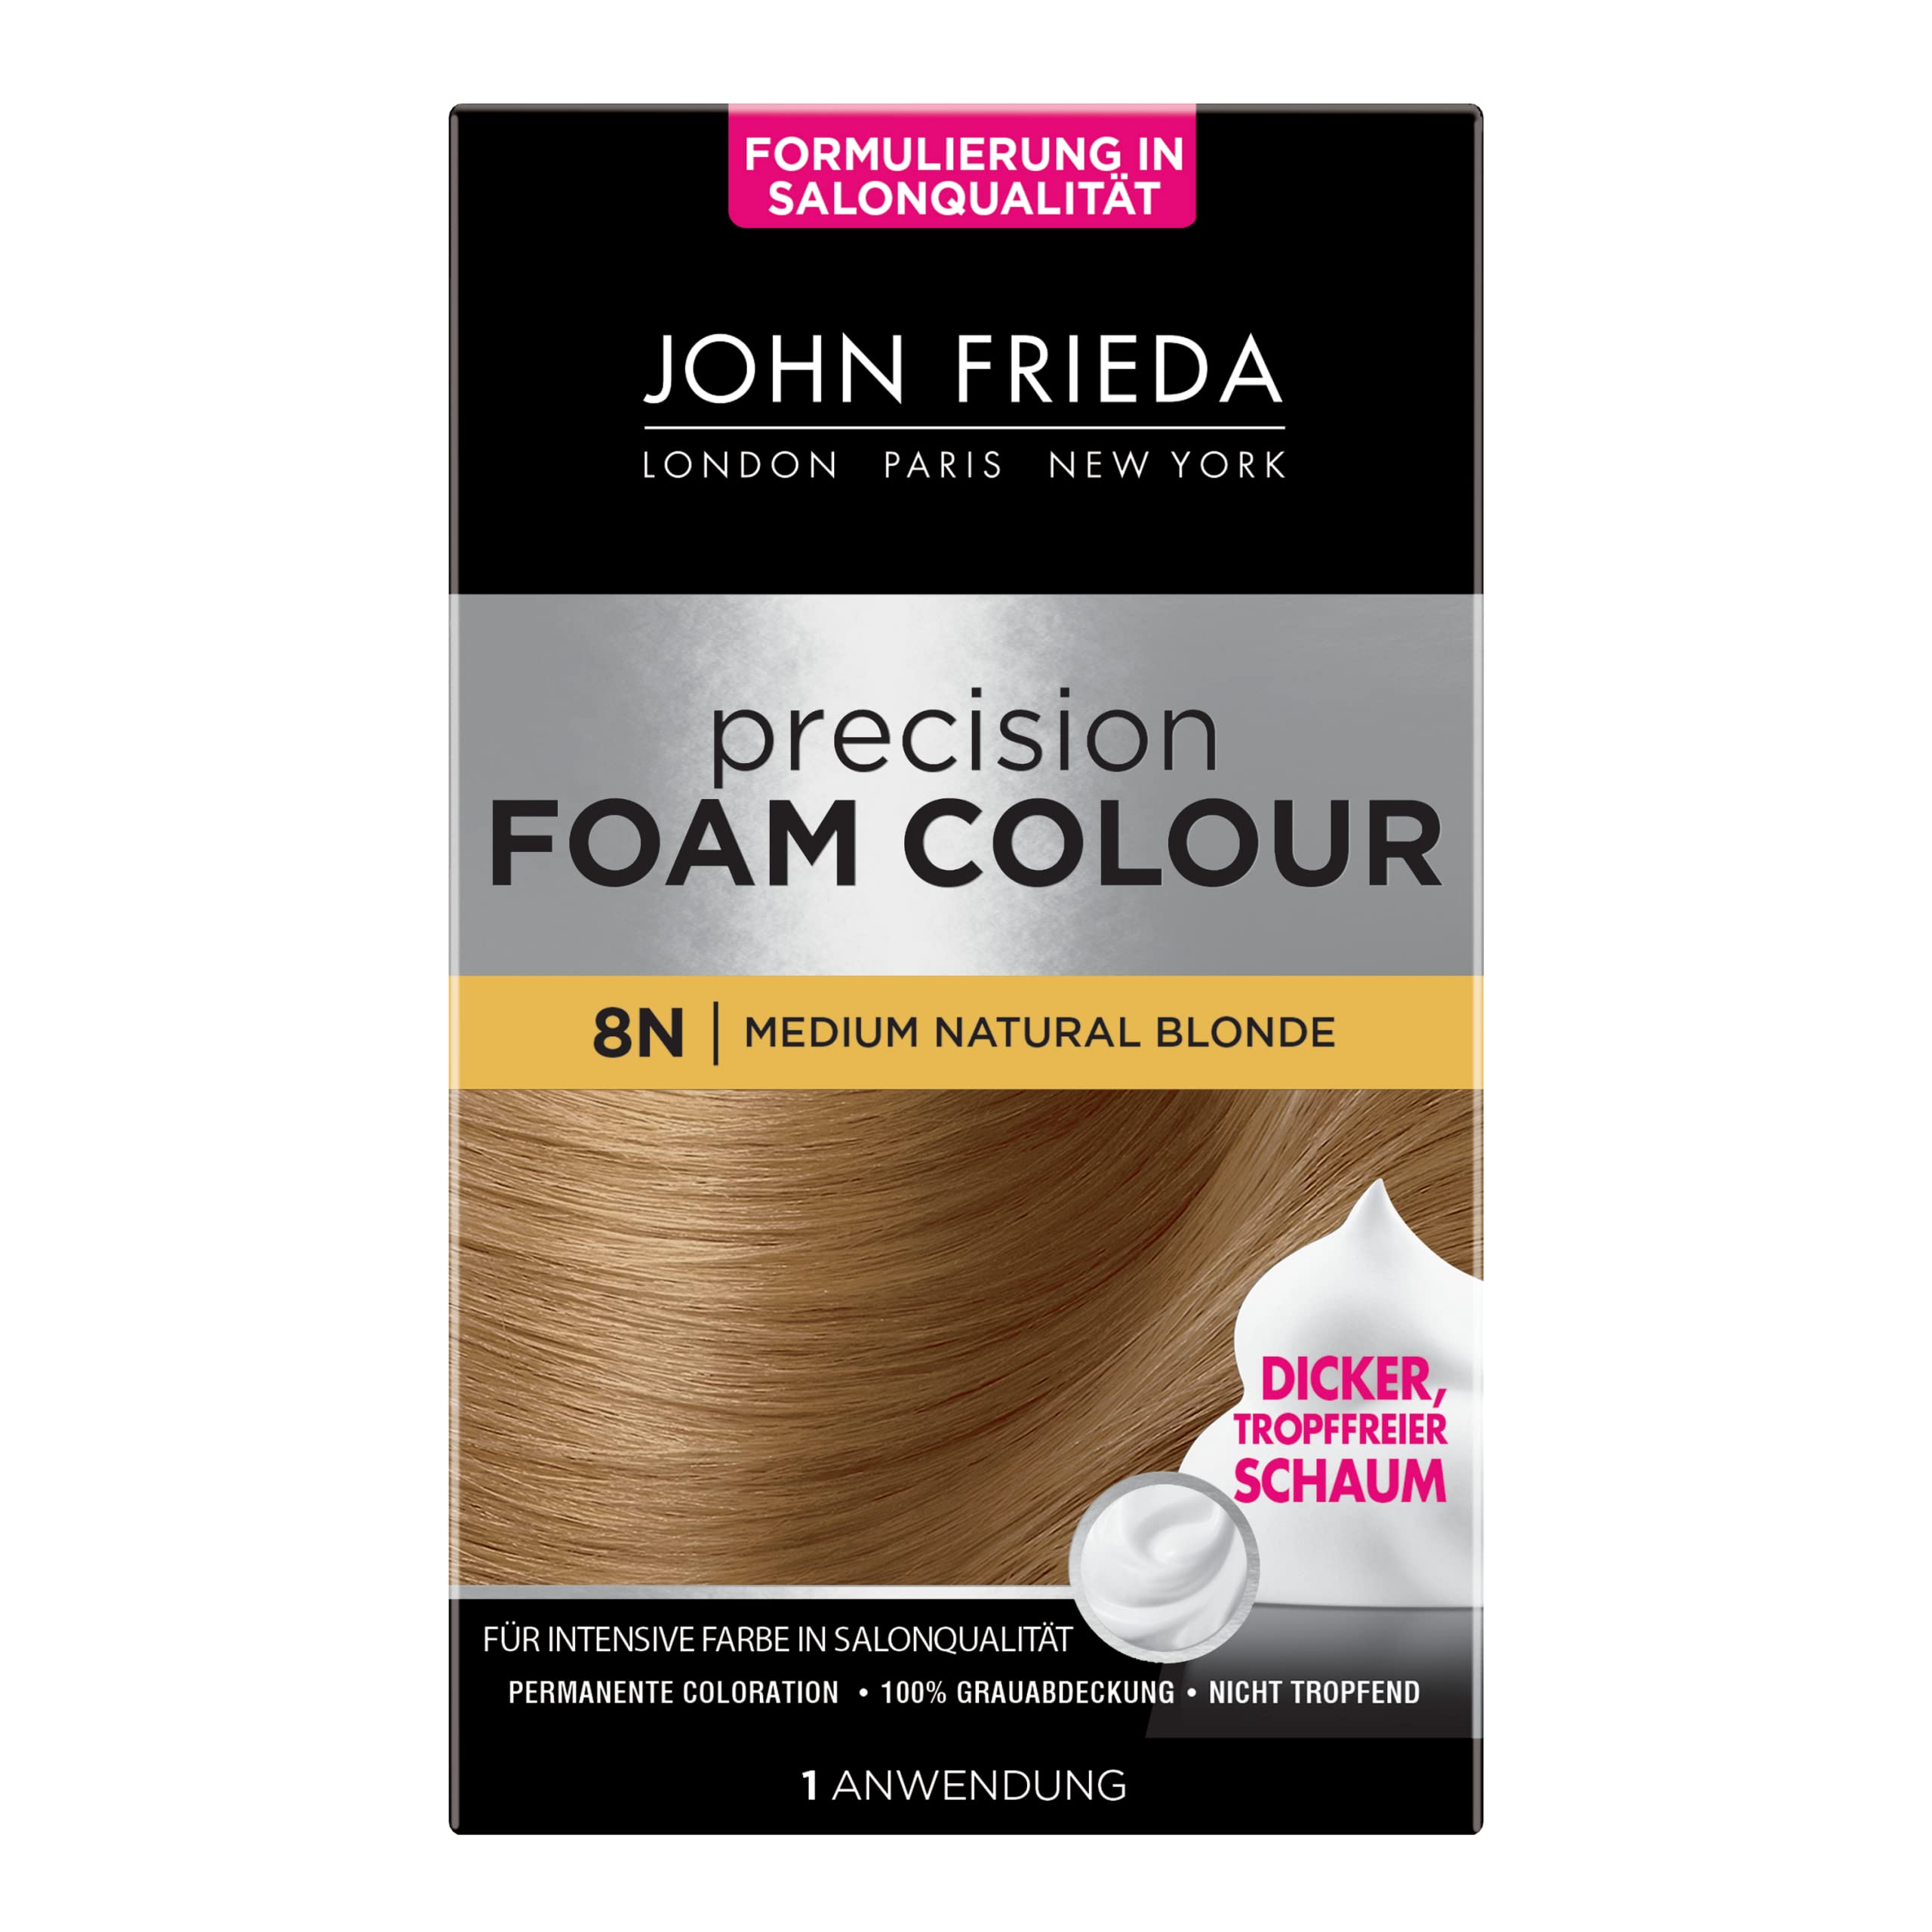 John Frieda Precision Foam Colour - 2er Pack - Farbe: 8N Medium Natural Blonde - Mittleres Blond - Permanente Coloration in Schaumform - Perfekte, gleichmäßige Abdeckung - Für jeweils 1 Anwendung